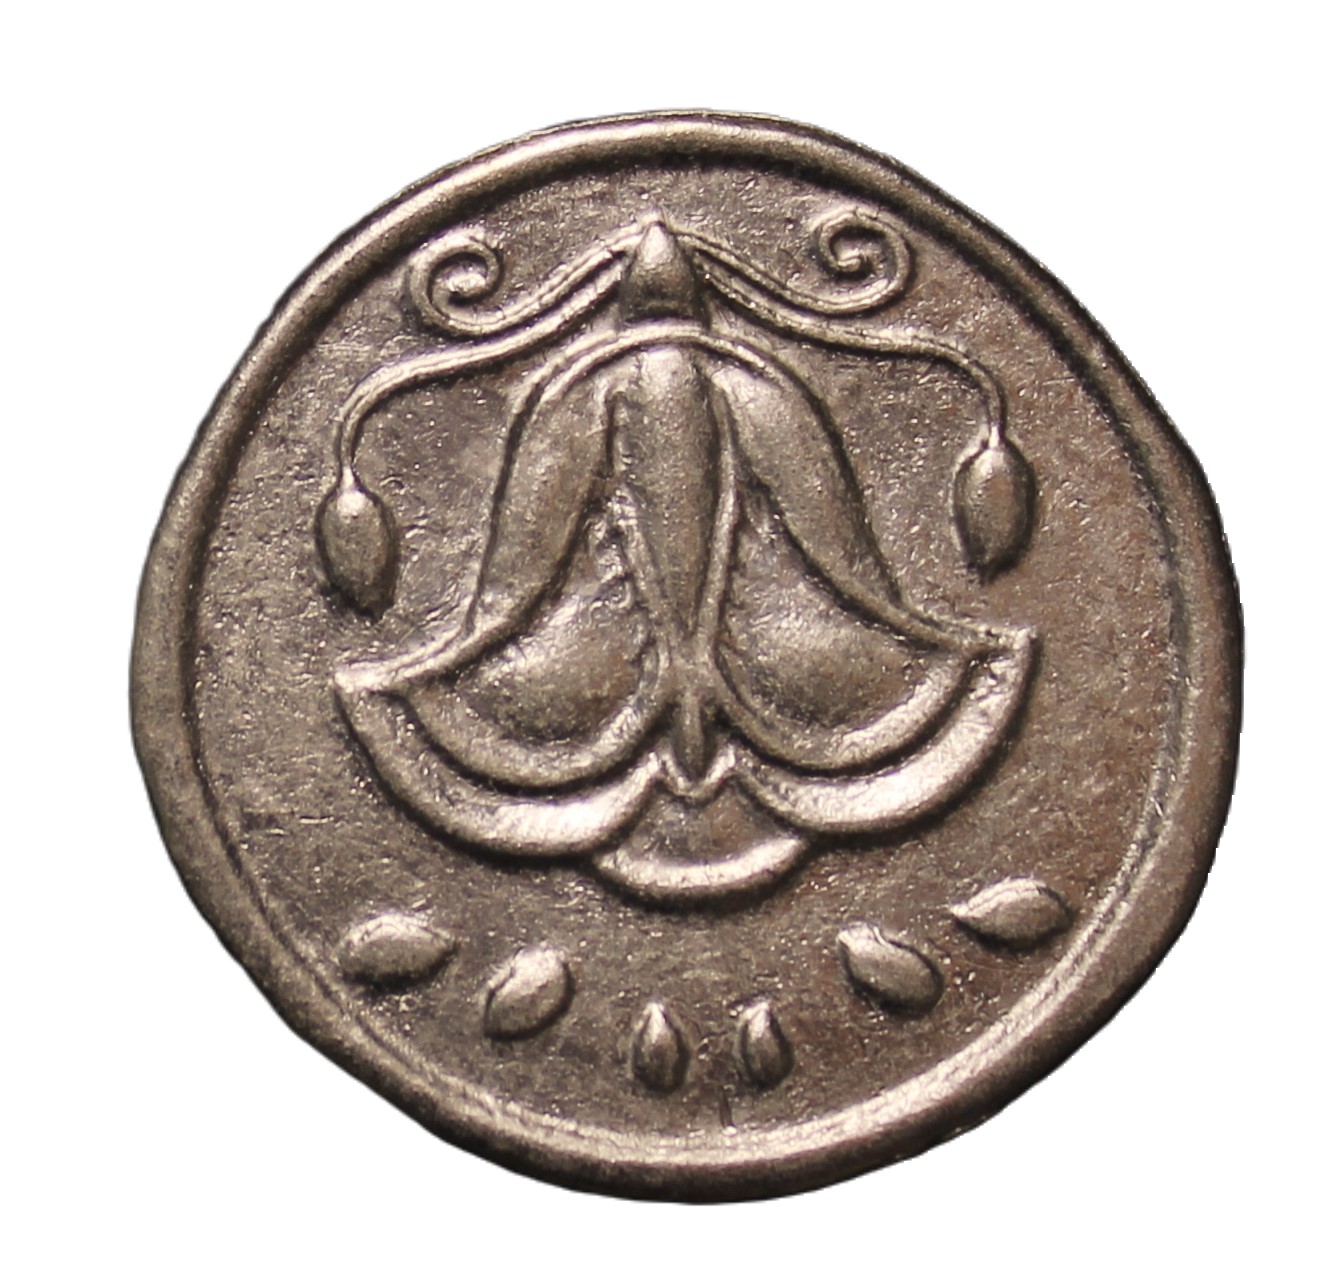 Сувенирная монета 1toy Золото магнитного моря Цветок